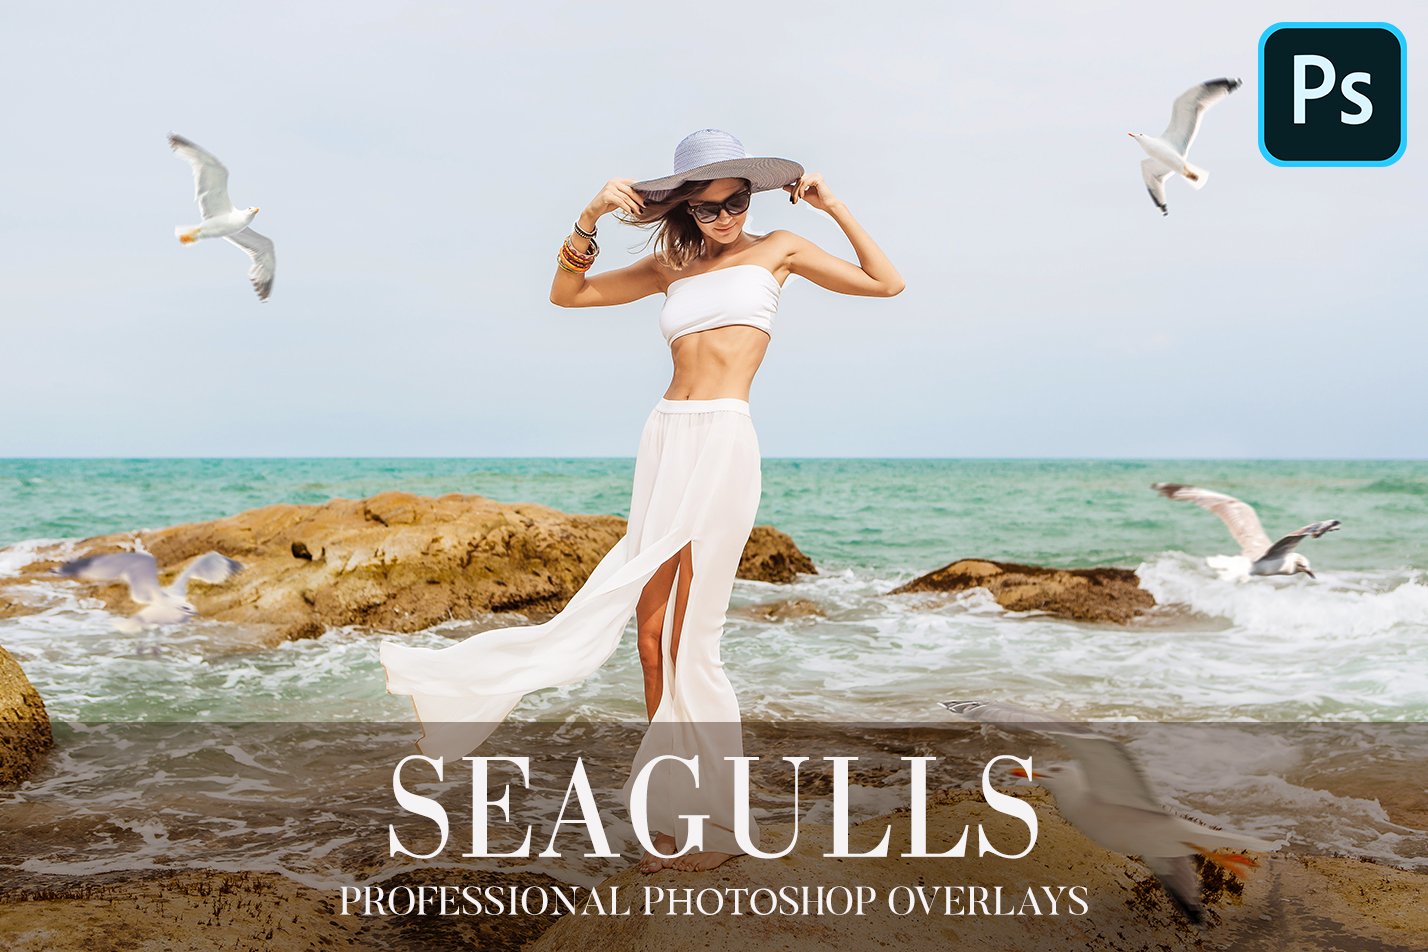 Seagulls Overlays Photoshopcover image.